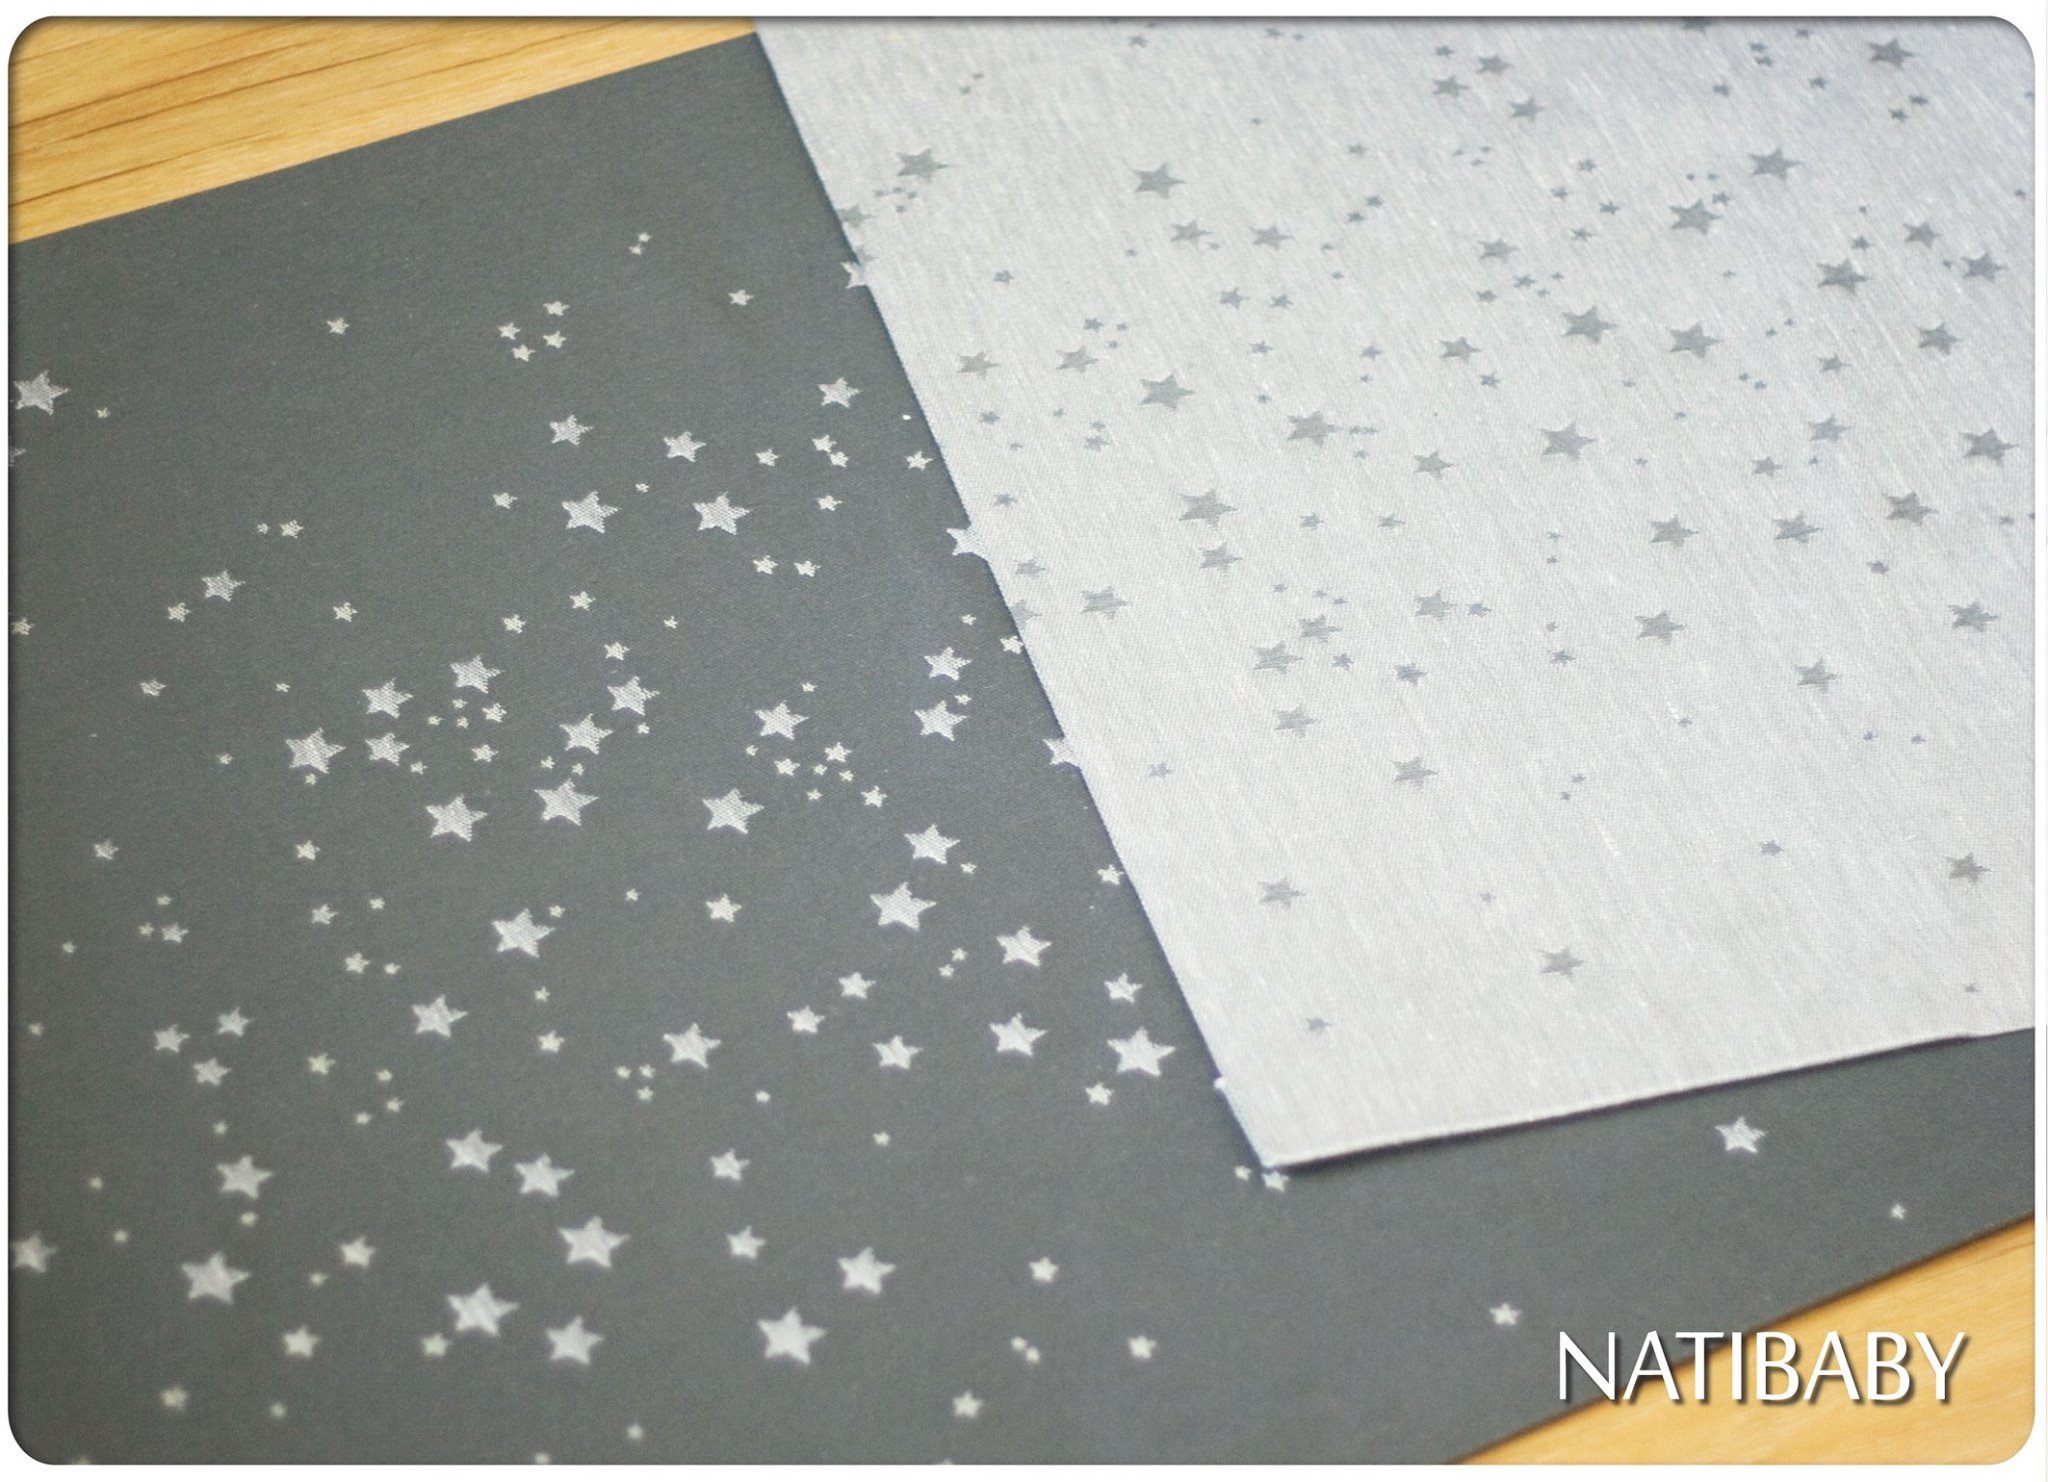 Tragetuch Natibaby Stardust Shades of Grey (merino, Leinen) Image